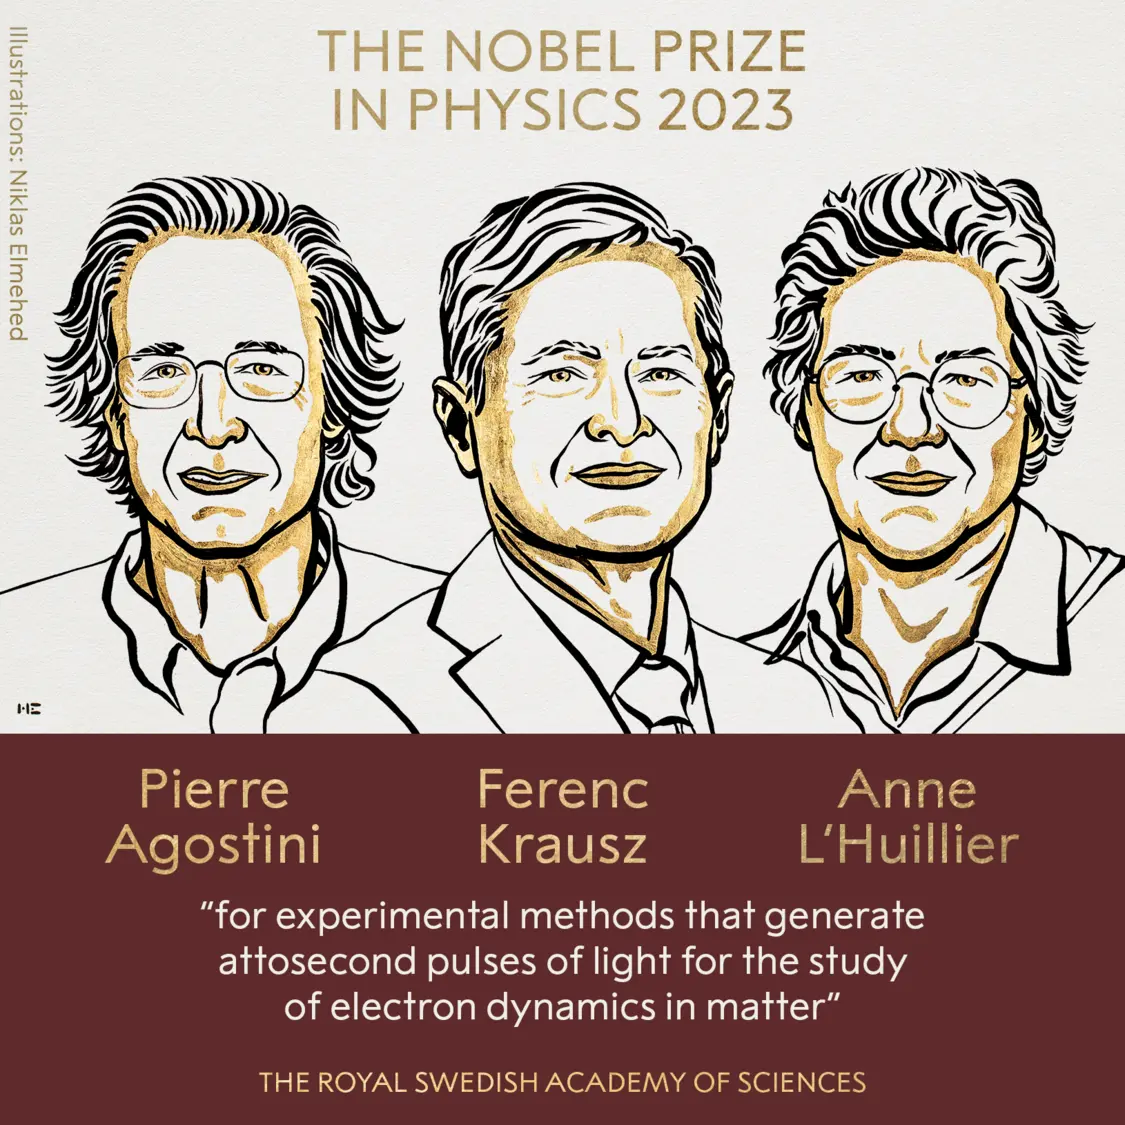 2023年诺贝尔物理学奖揭晓,三位科学家获奖